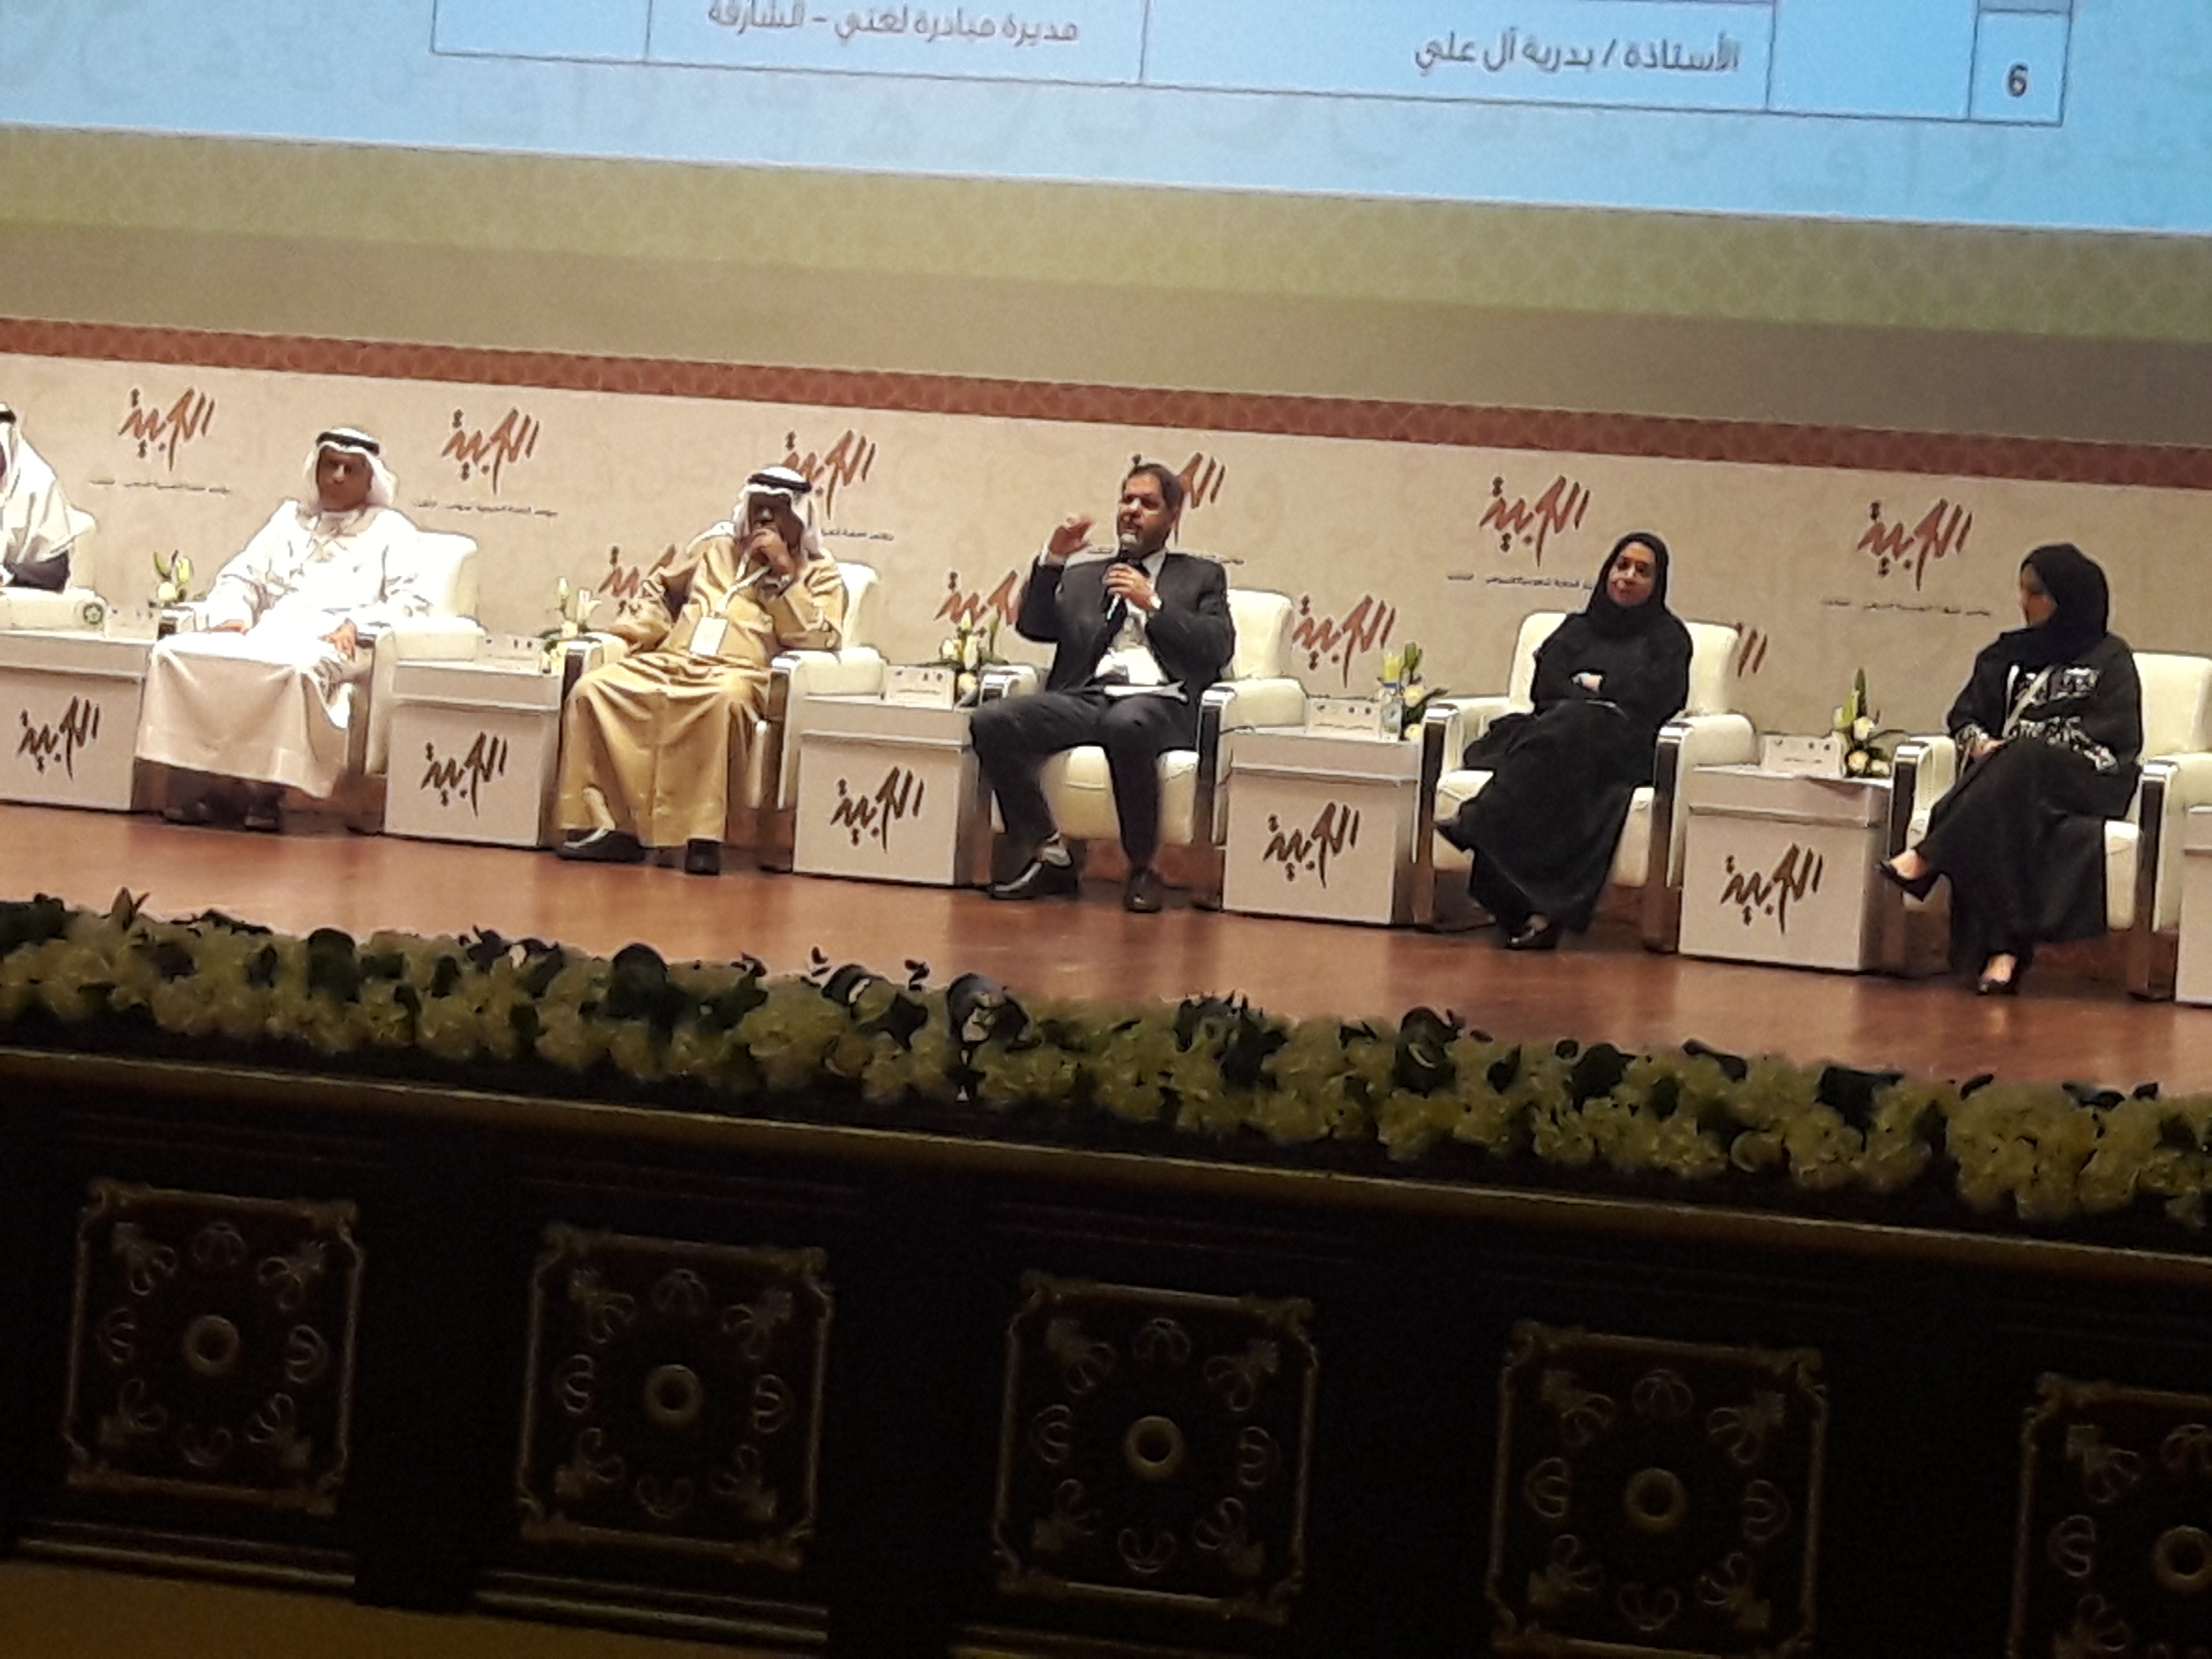 الأمين العام يمثل المجمع في مؤتمر اللغة العربية الدولي الثالث بالشارقة